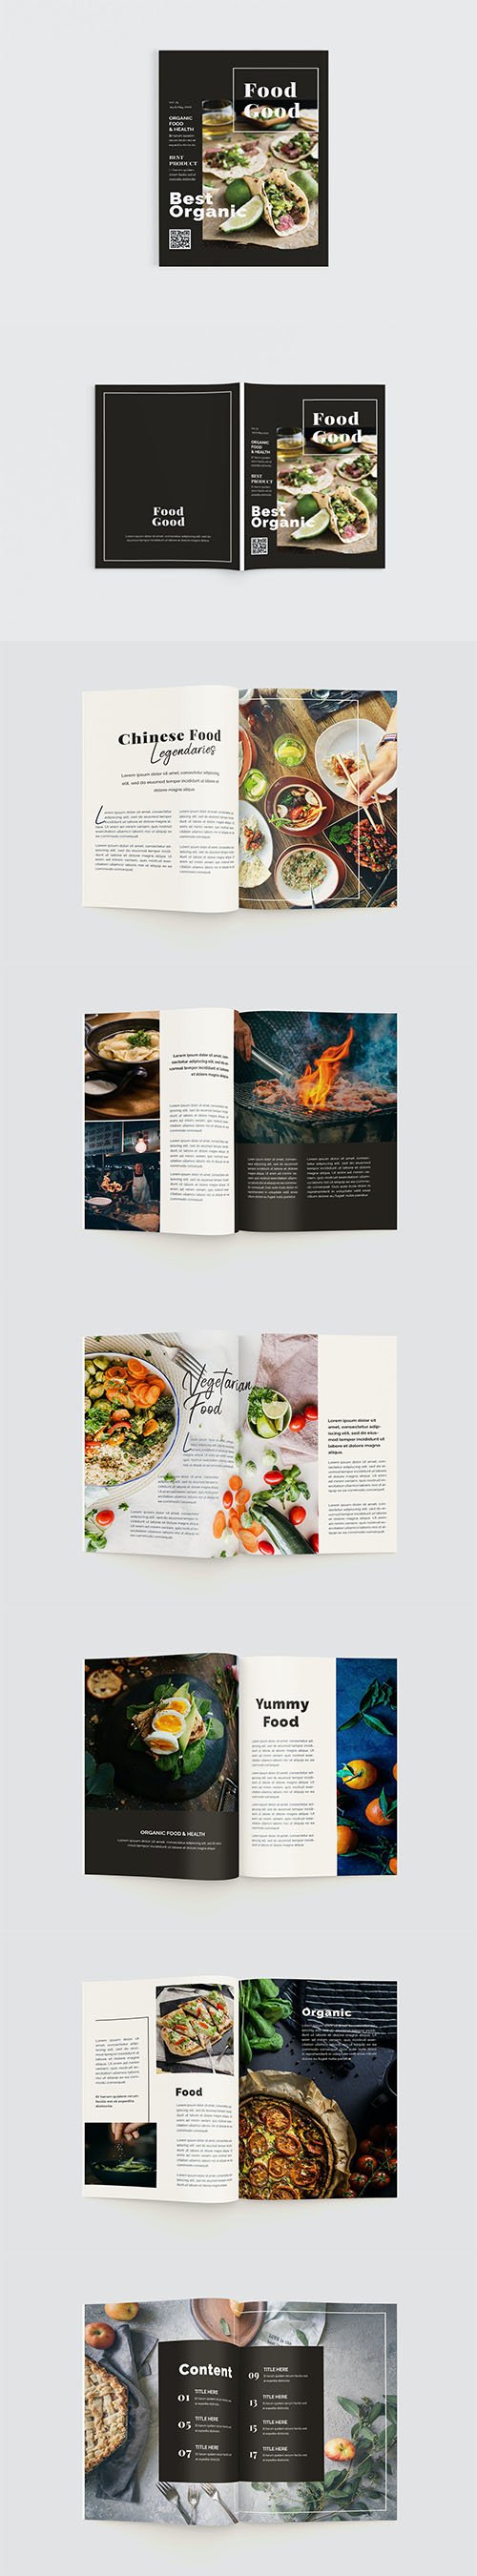 Food Good Magazine